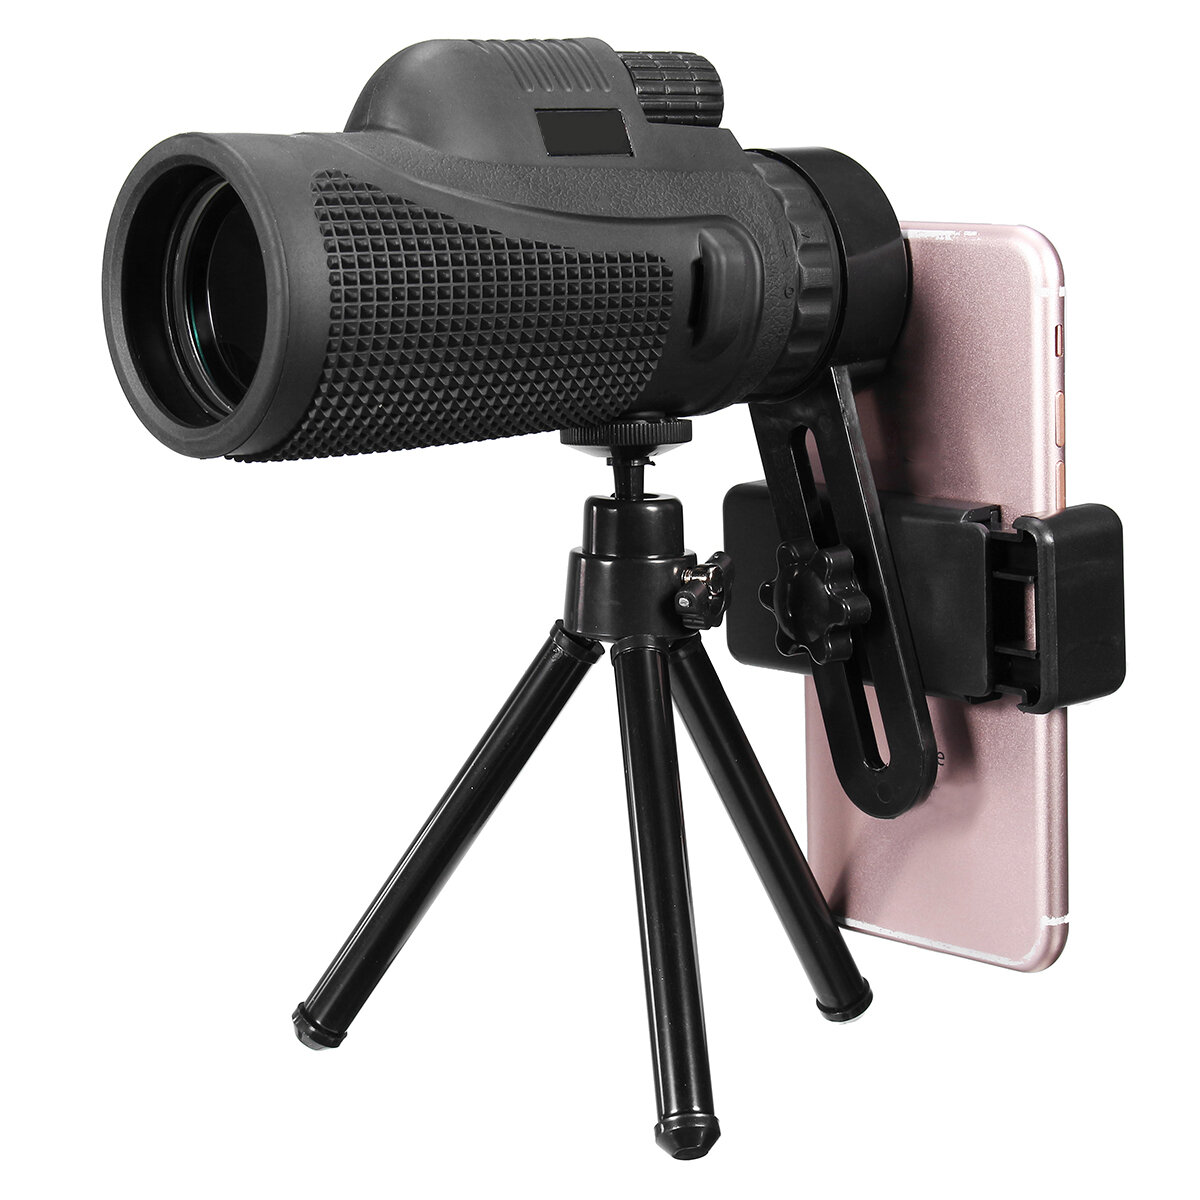 16X52/40X60 HD Zoom monoculaire télescope téléobjectif caméra objectif support pour téléphone/trépied cadeau pour voyage en plein air randonnée